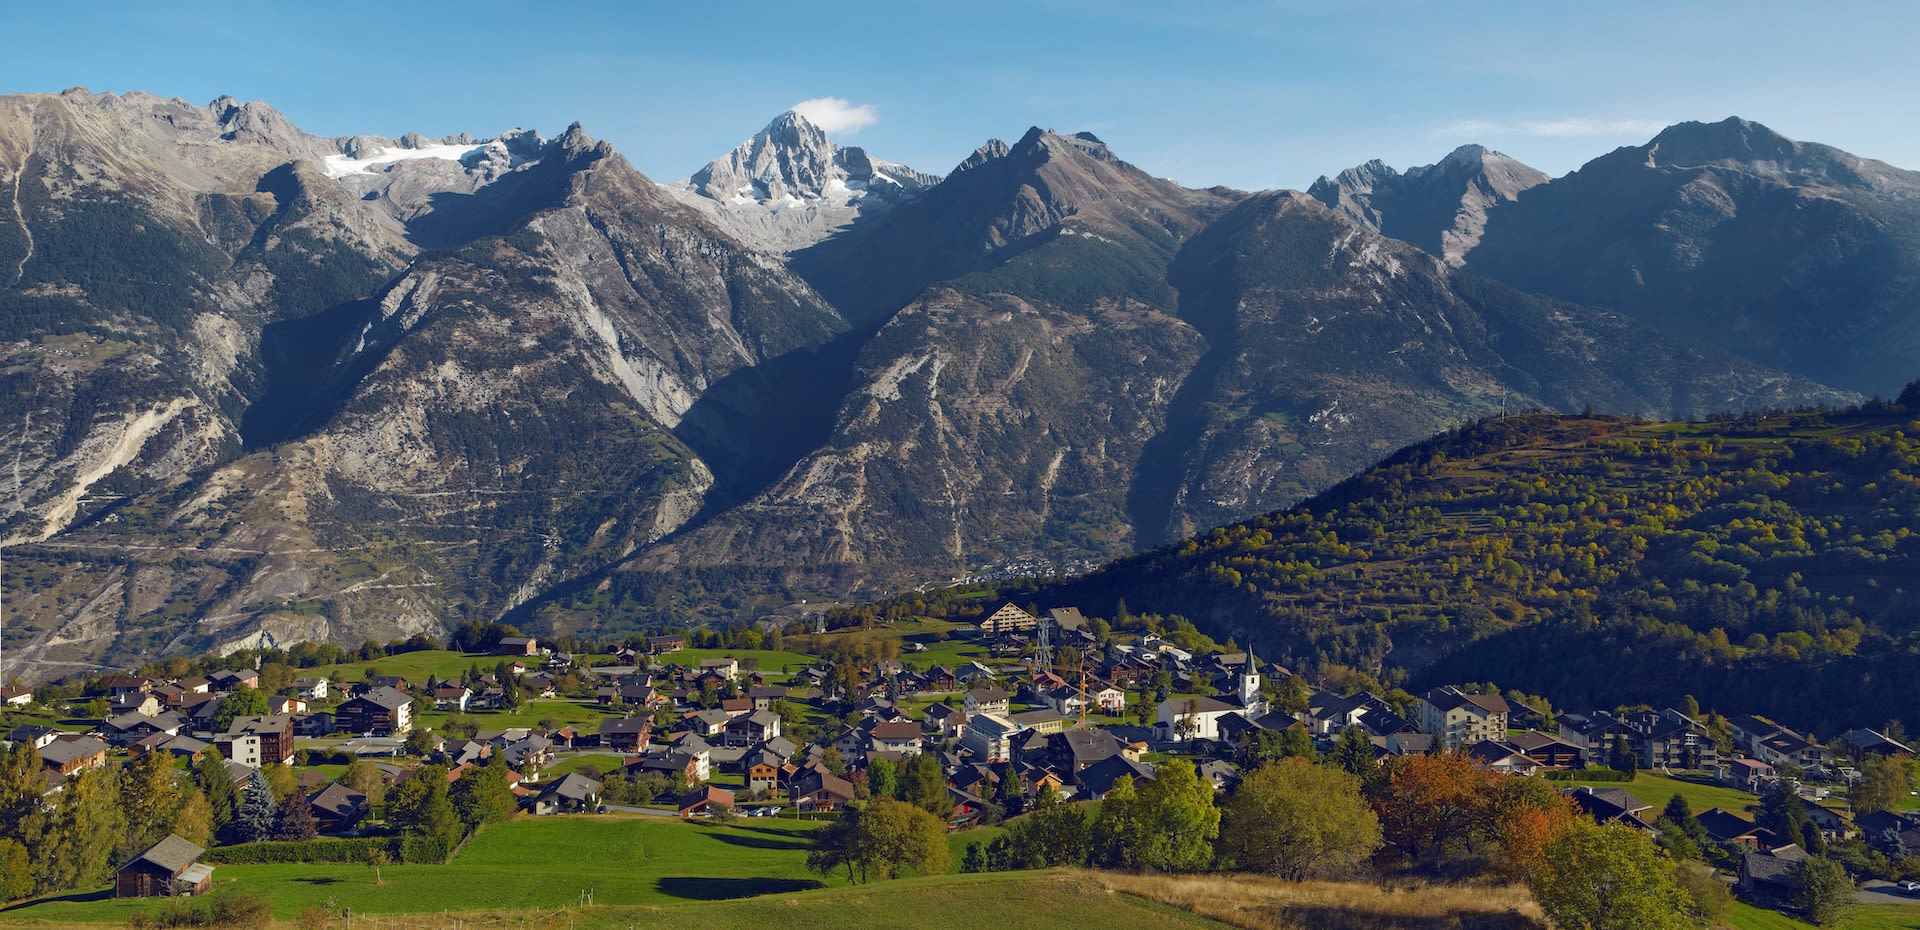 Village Unterbaech during summer, in the background the Bietschhorn, Valais